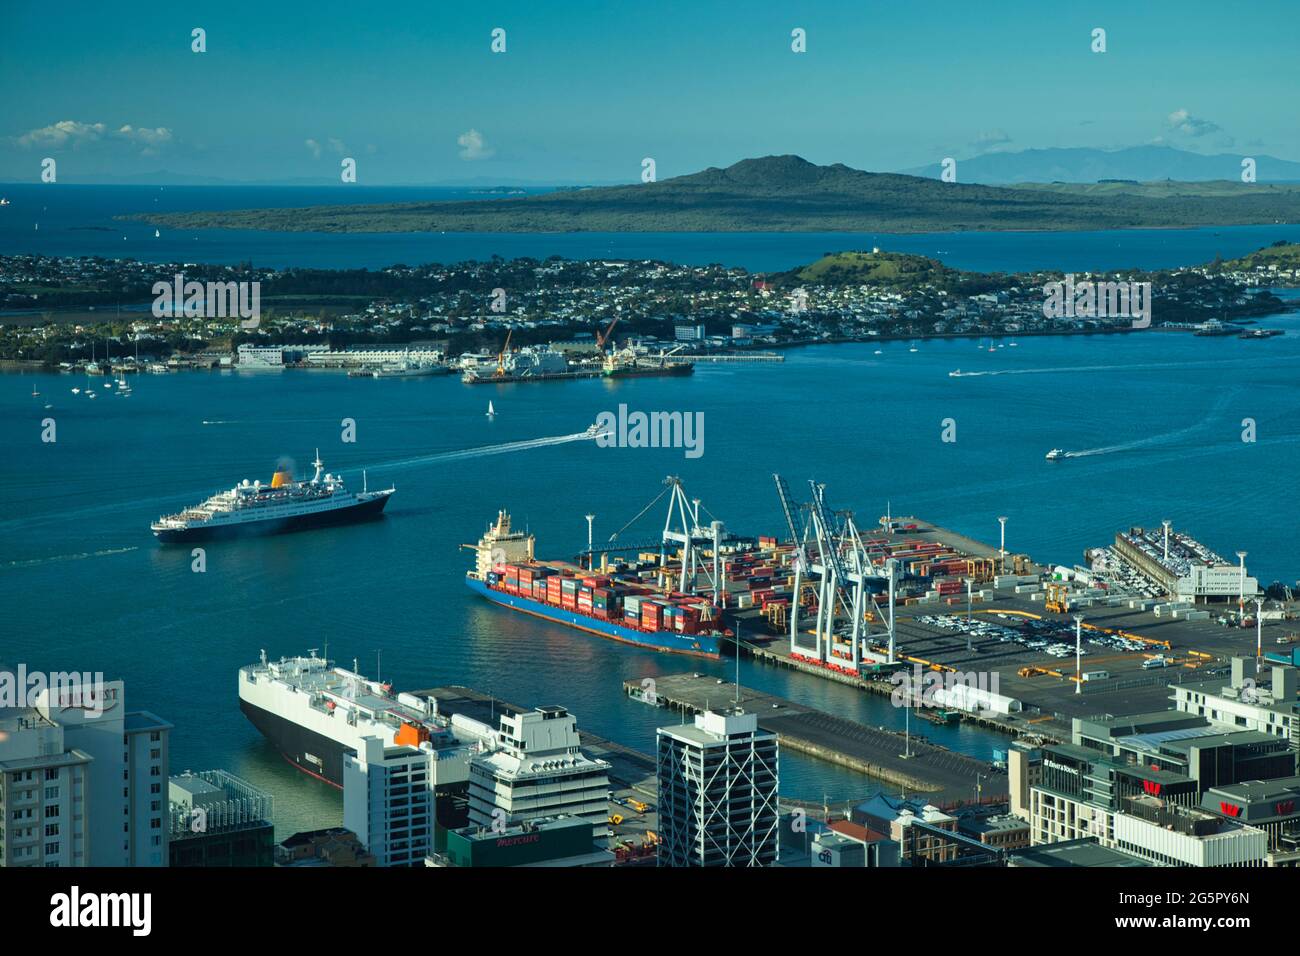 Ein Blick über den Hafen von Auckland mit einem kleinen Schiff, das absegelt, vom Sky Tower mit Schiffsliegeplätzen im Vordergrund. Auckland, Neuseeland Stockfoto